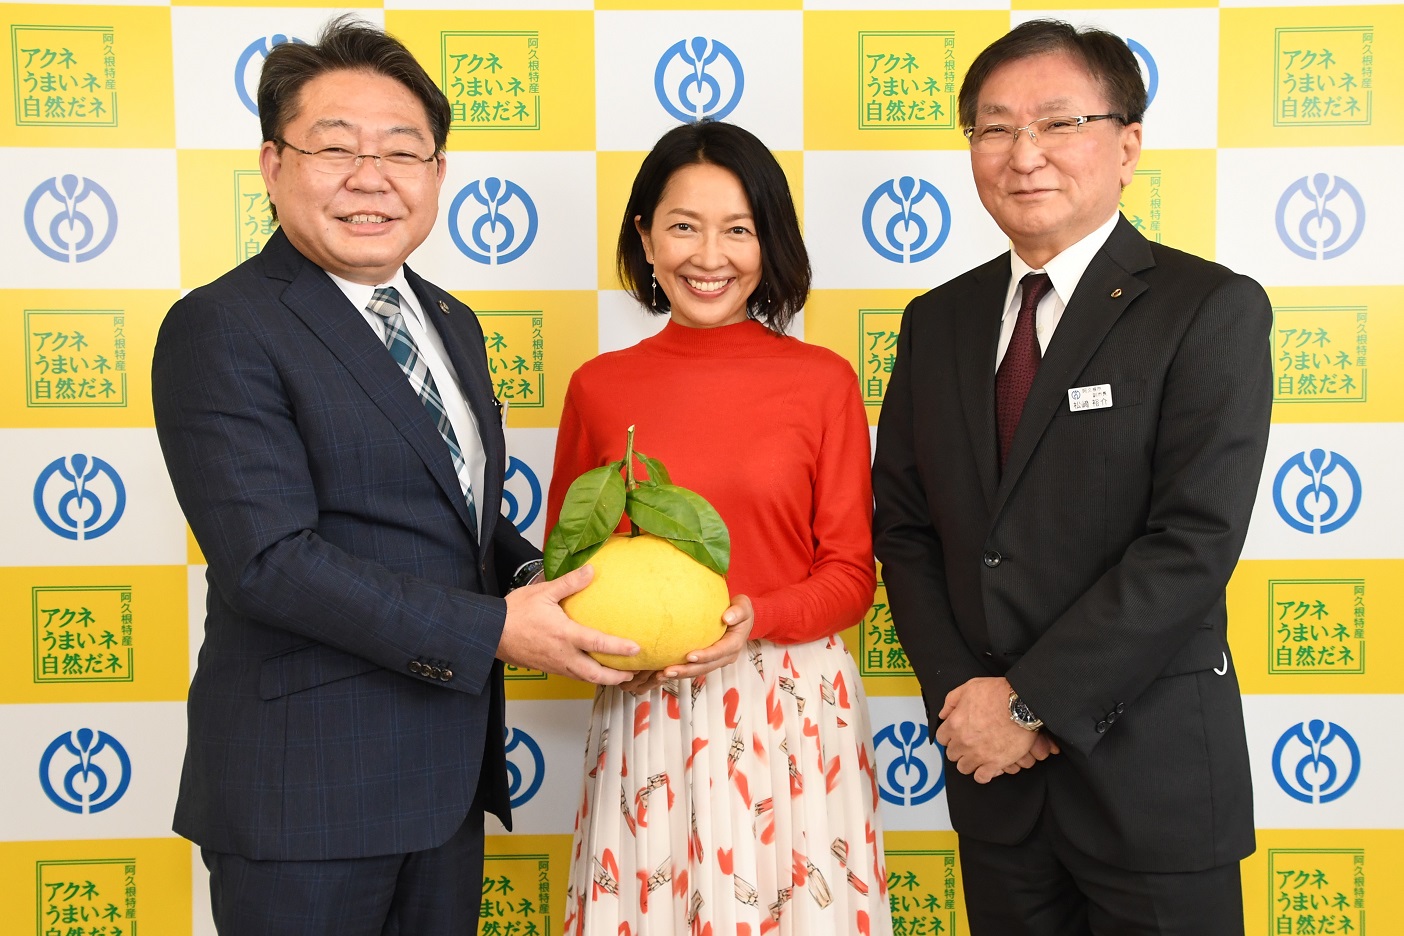 俳優の羽田美智子さんと西平市長および松崎副市長の写真